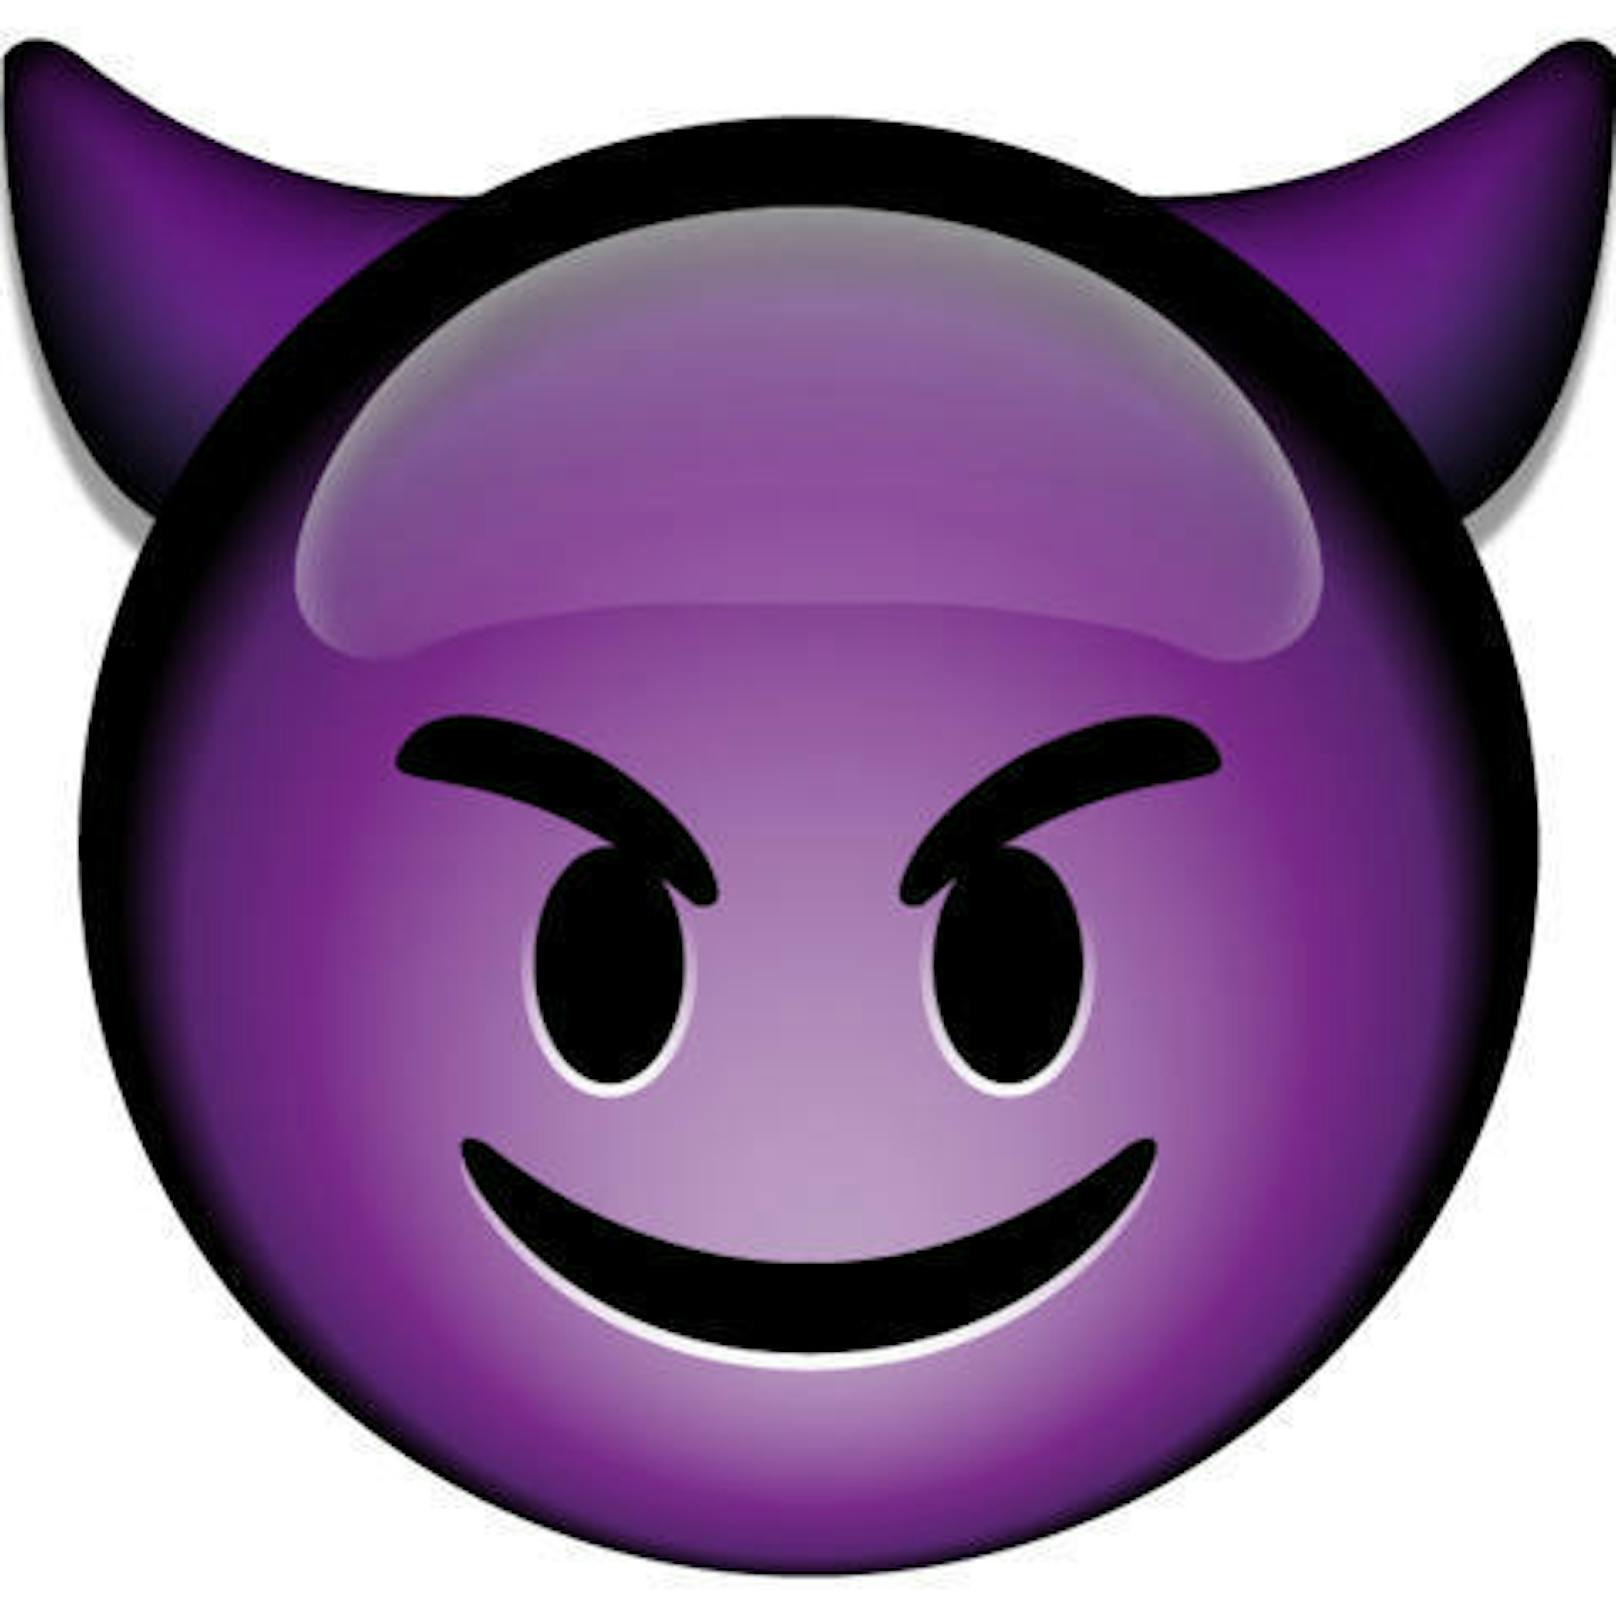 Der Gehörnte kommt ebenfalls gut an, das violette Teufelchen grinst neckisch. So was macht neugierig. Merke: Okkultismus ist sexy!